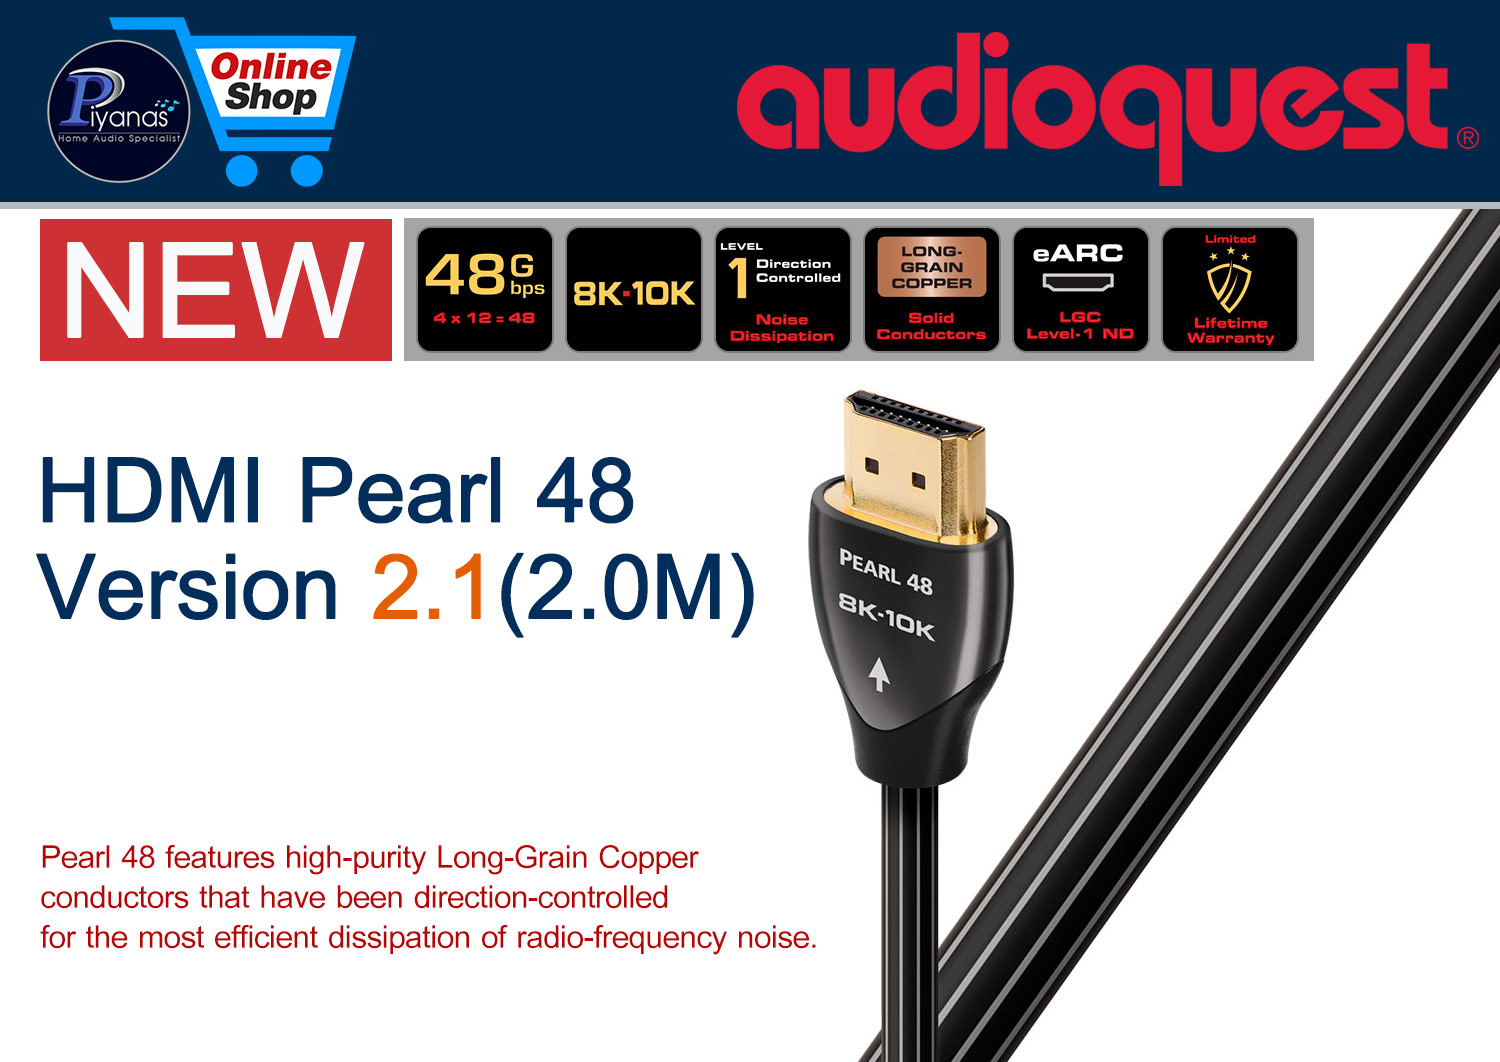 HDMI-Pearl 48 Version 2.1 (2.0M)